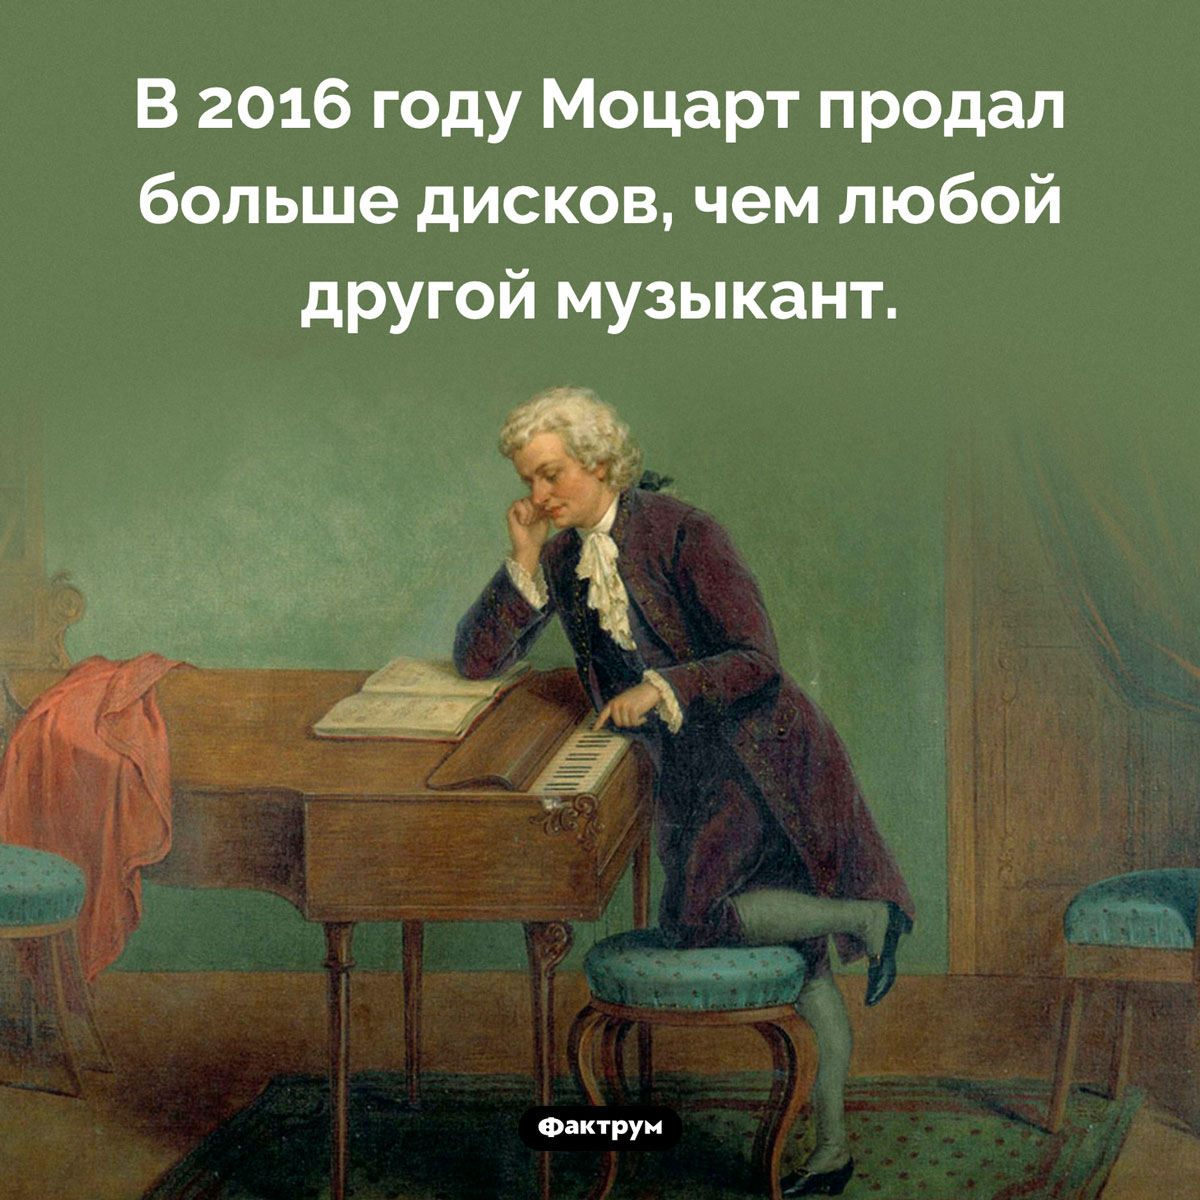 Продажи Моцарта. В 2016 году Моцарт продал больше дисков, чем любой другой музыкант.